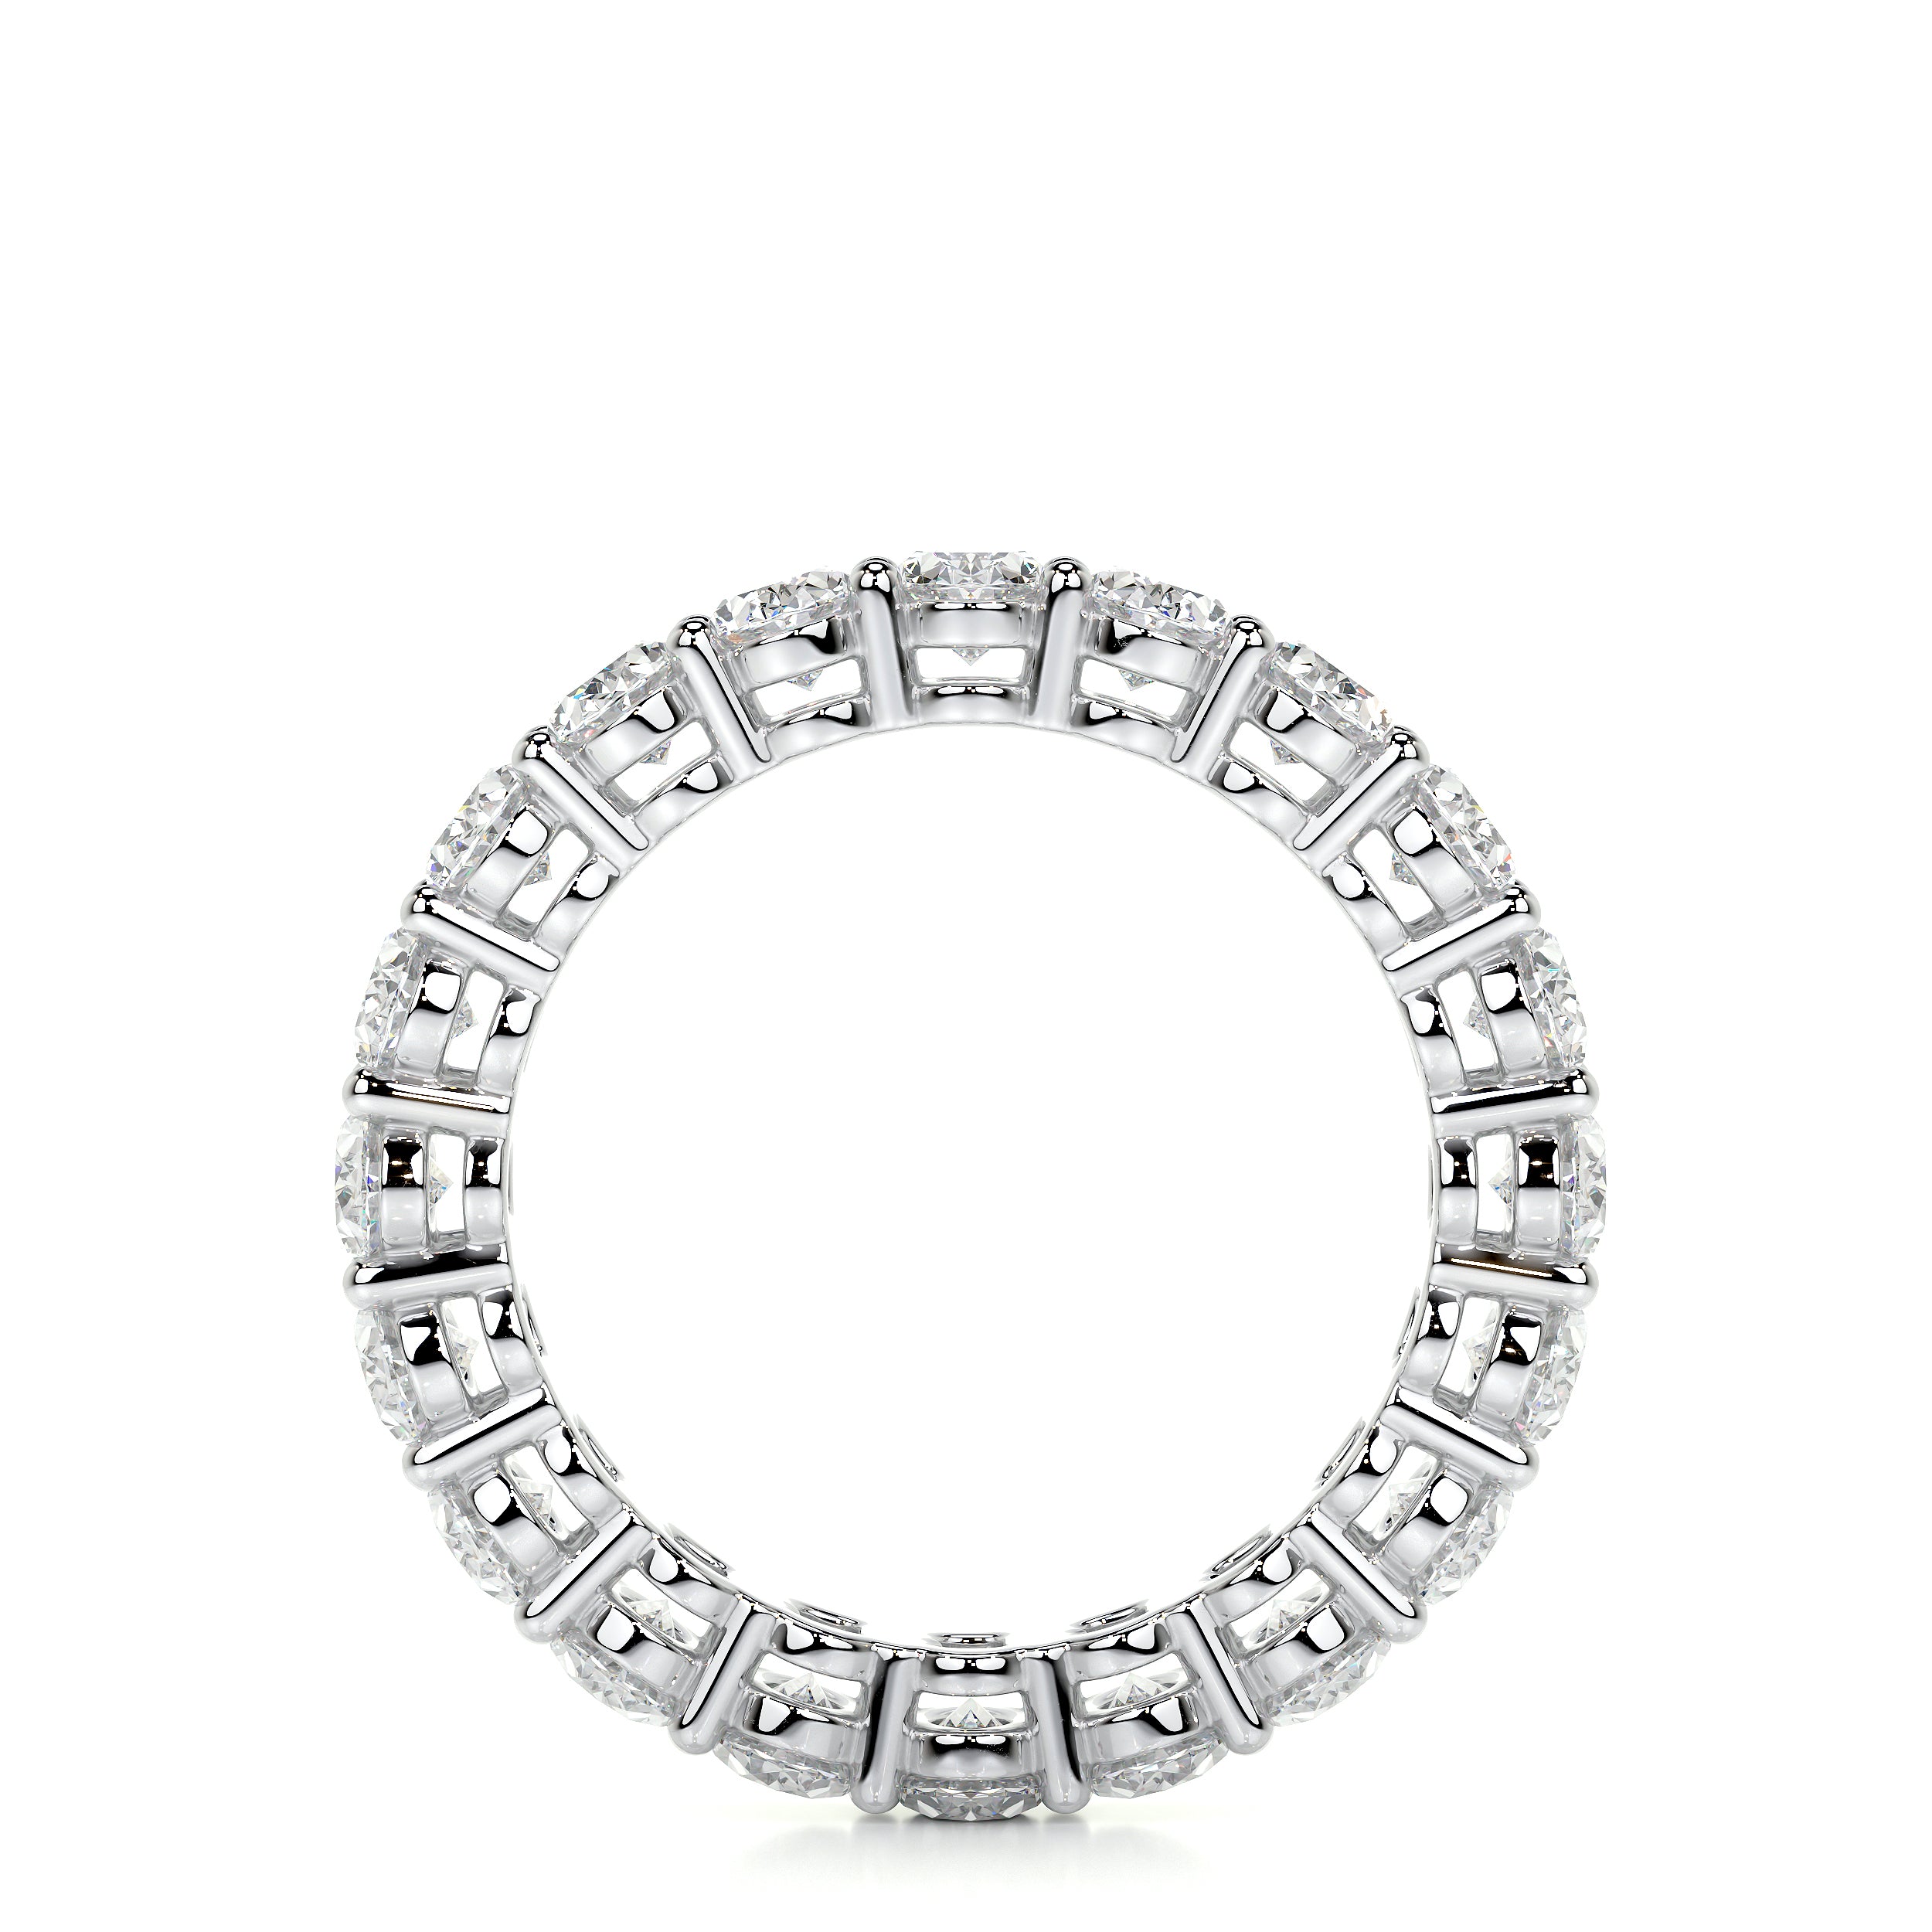 Julia Lab Grown Diamond Wedding Ring   (3.5 Carat) -18K White Gold